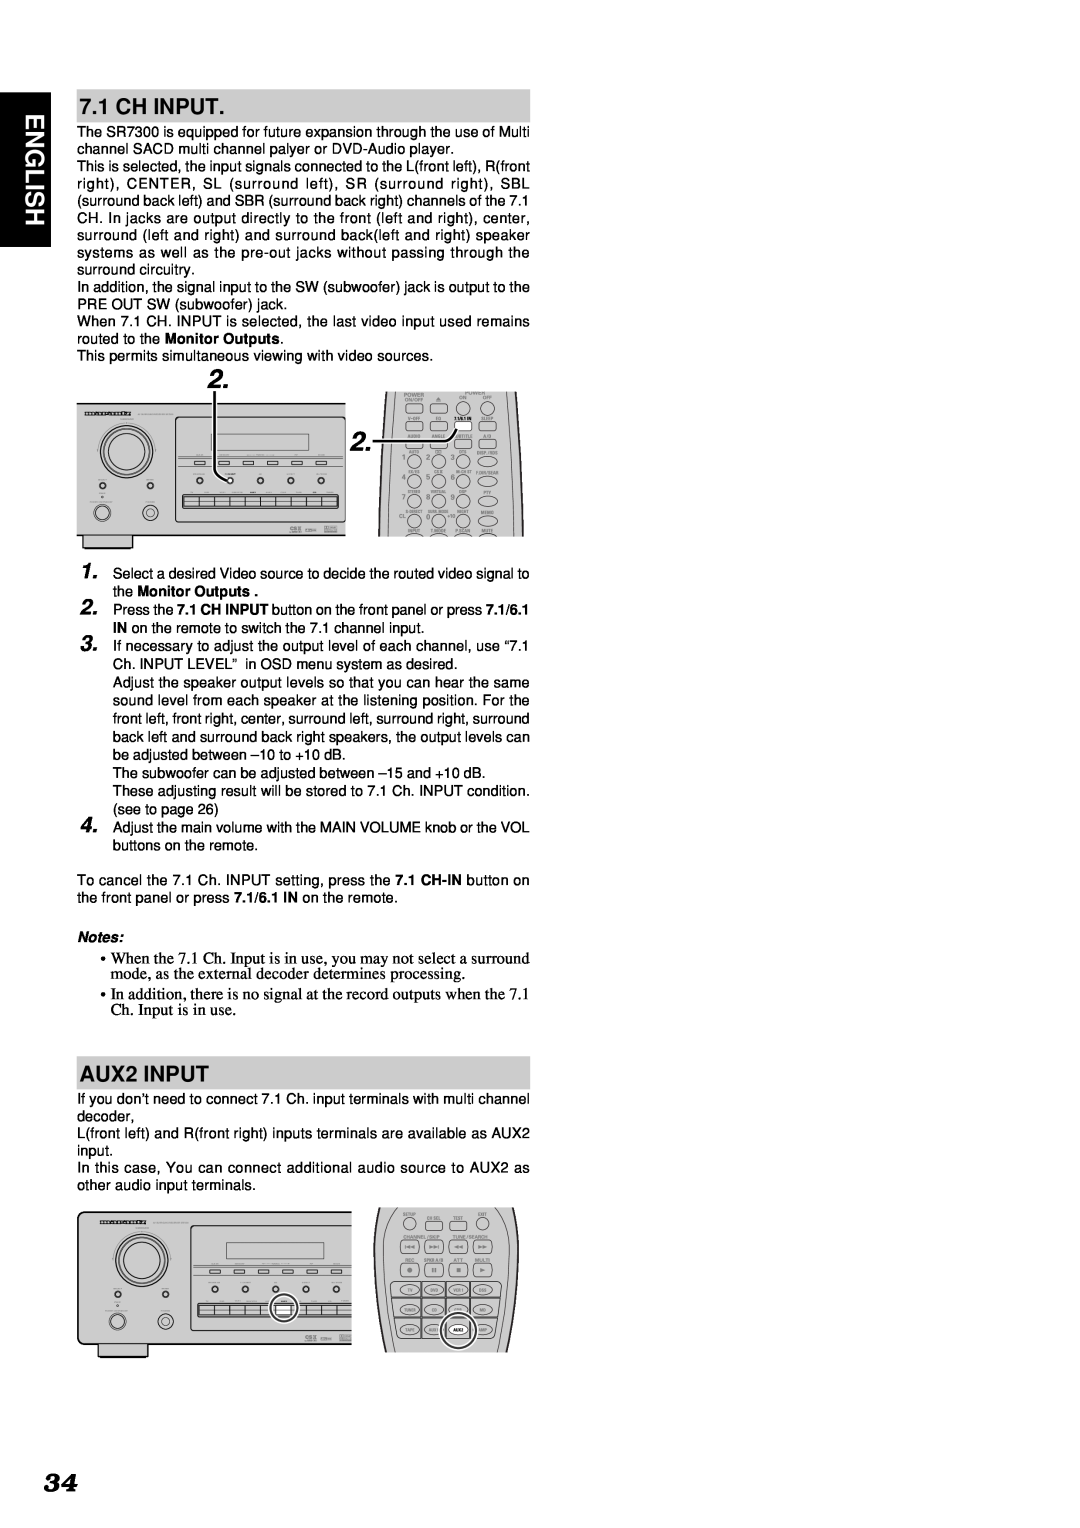 Marantz SR7300 manual English, Ch Input, AUX2 INPUT 